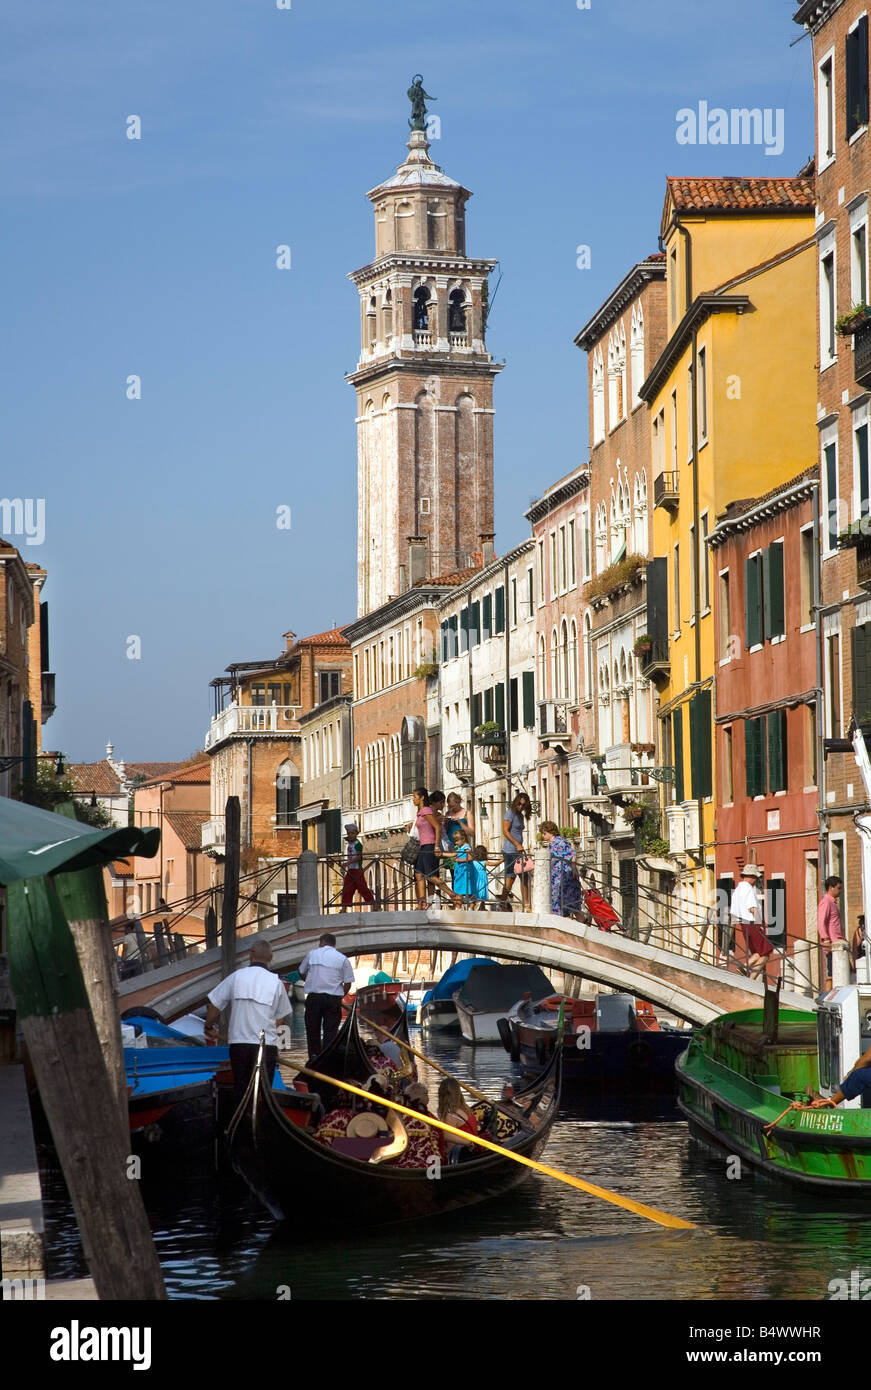 Pretty canal scene near the Academia Bridge in Venice Italy Stock Photo